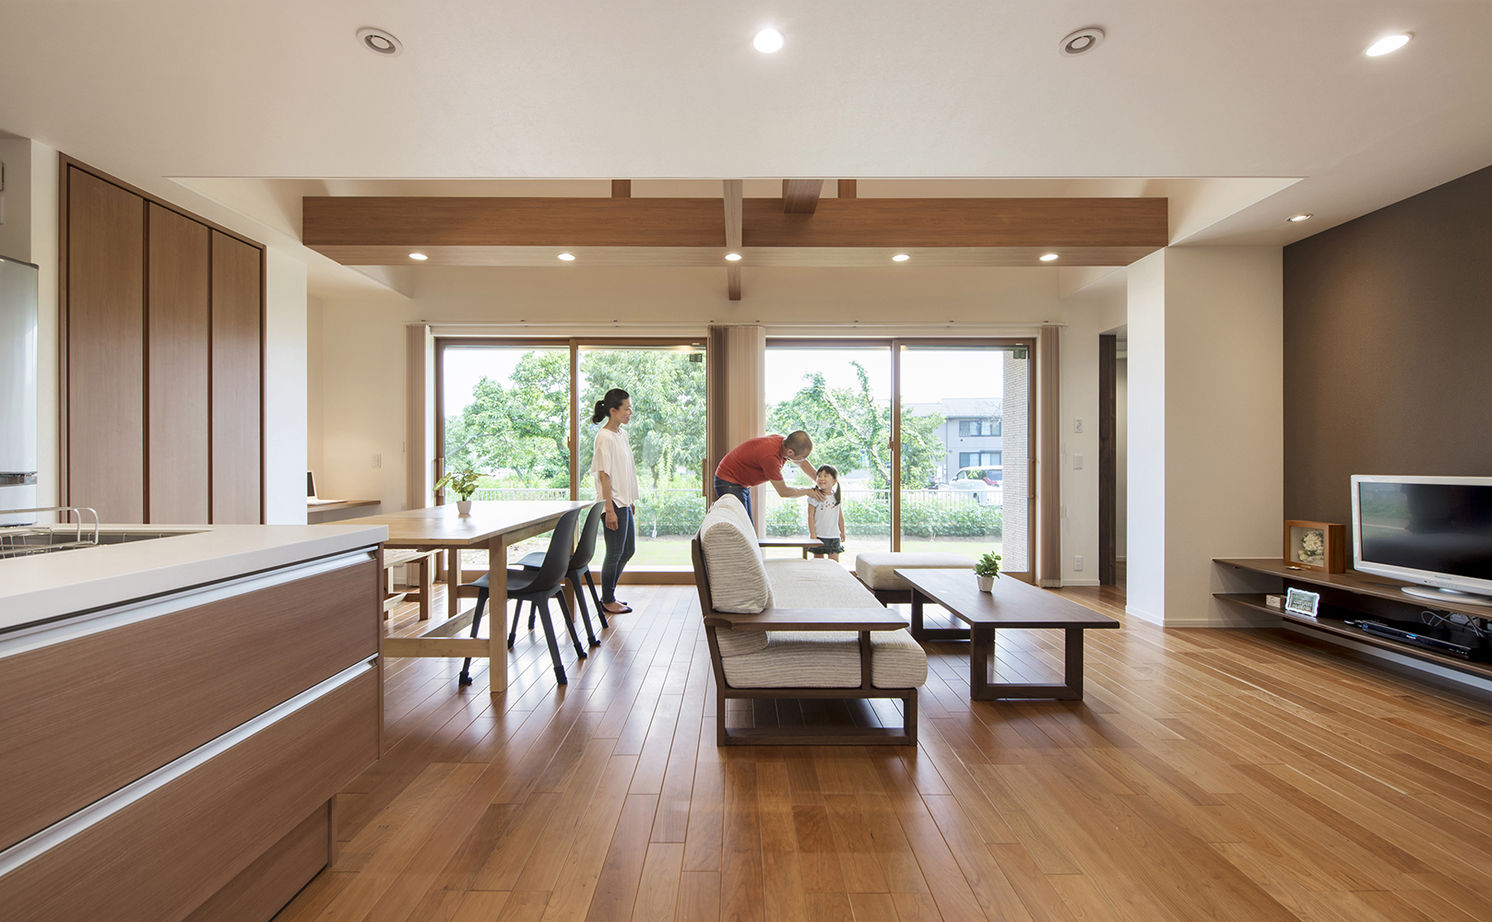 Suumo 家事移動が少ない平屋建て 開放的なリビング ダイニングは極上の癒し空間 トヨタホーム の建築実例詳細 注文住宅